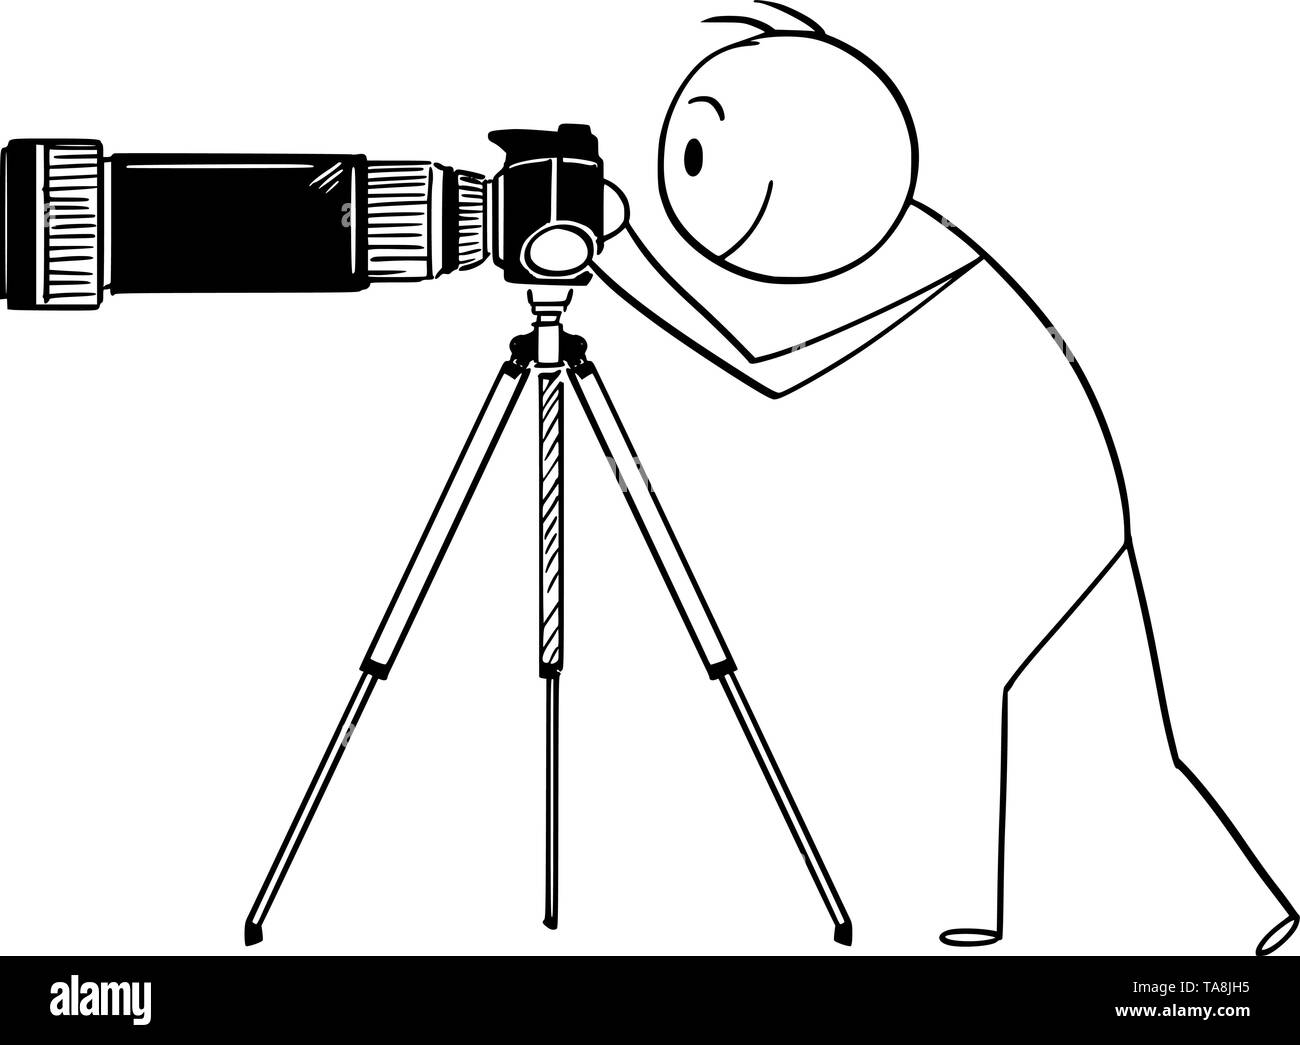 Vector cartoon stick figura disegno illustrazione concettuale dell'uomo o fotografo di prendere foto con la fotocamera con grandi e lunghe zoom o un teleobiettivo montato su cavalletto. Illustrazione Vettoriale